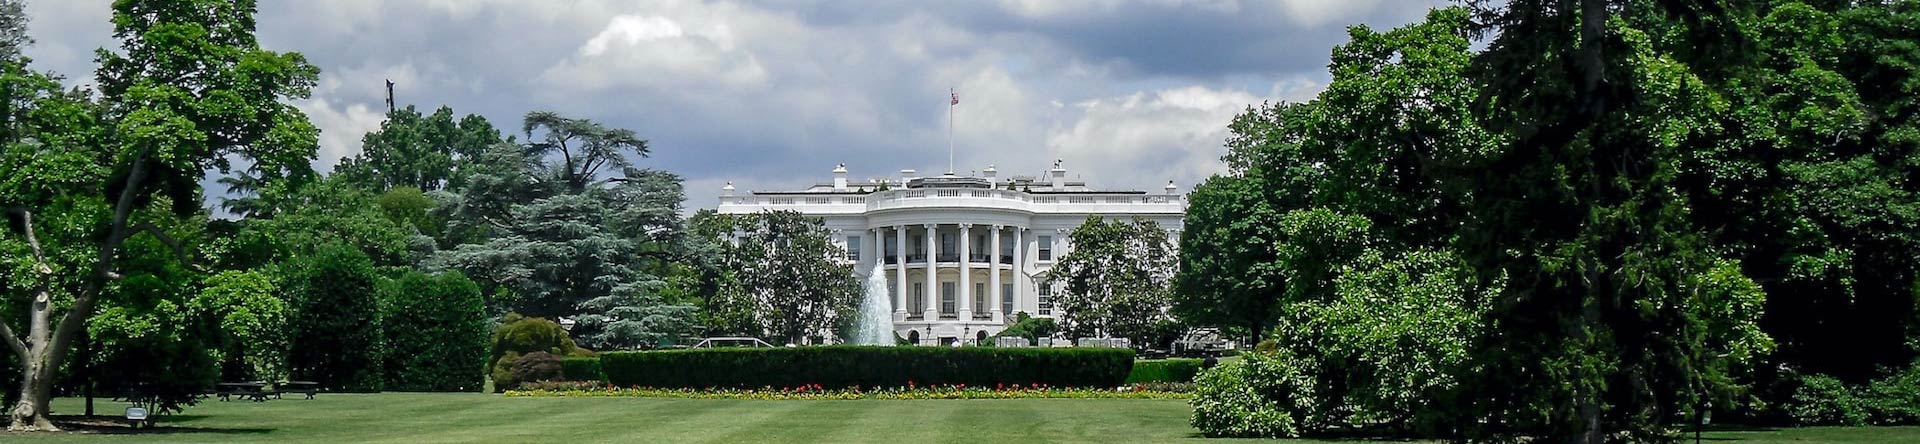 Het Witte Huis Washington D.C.